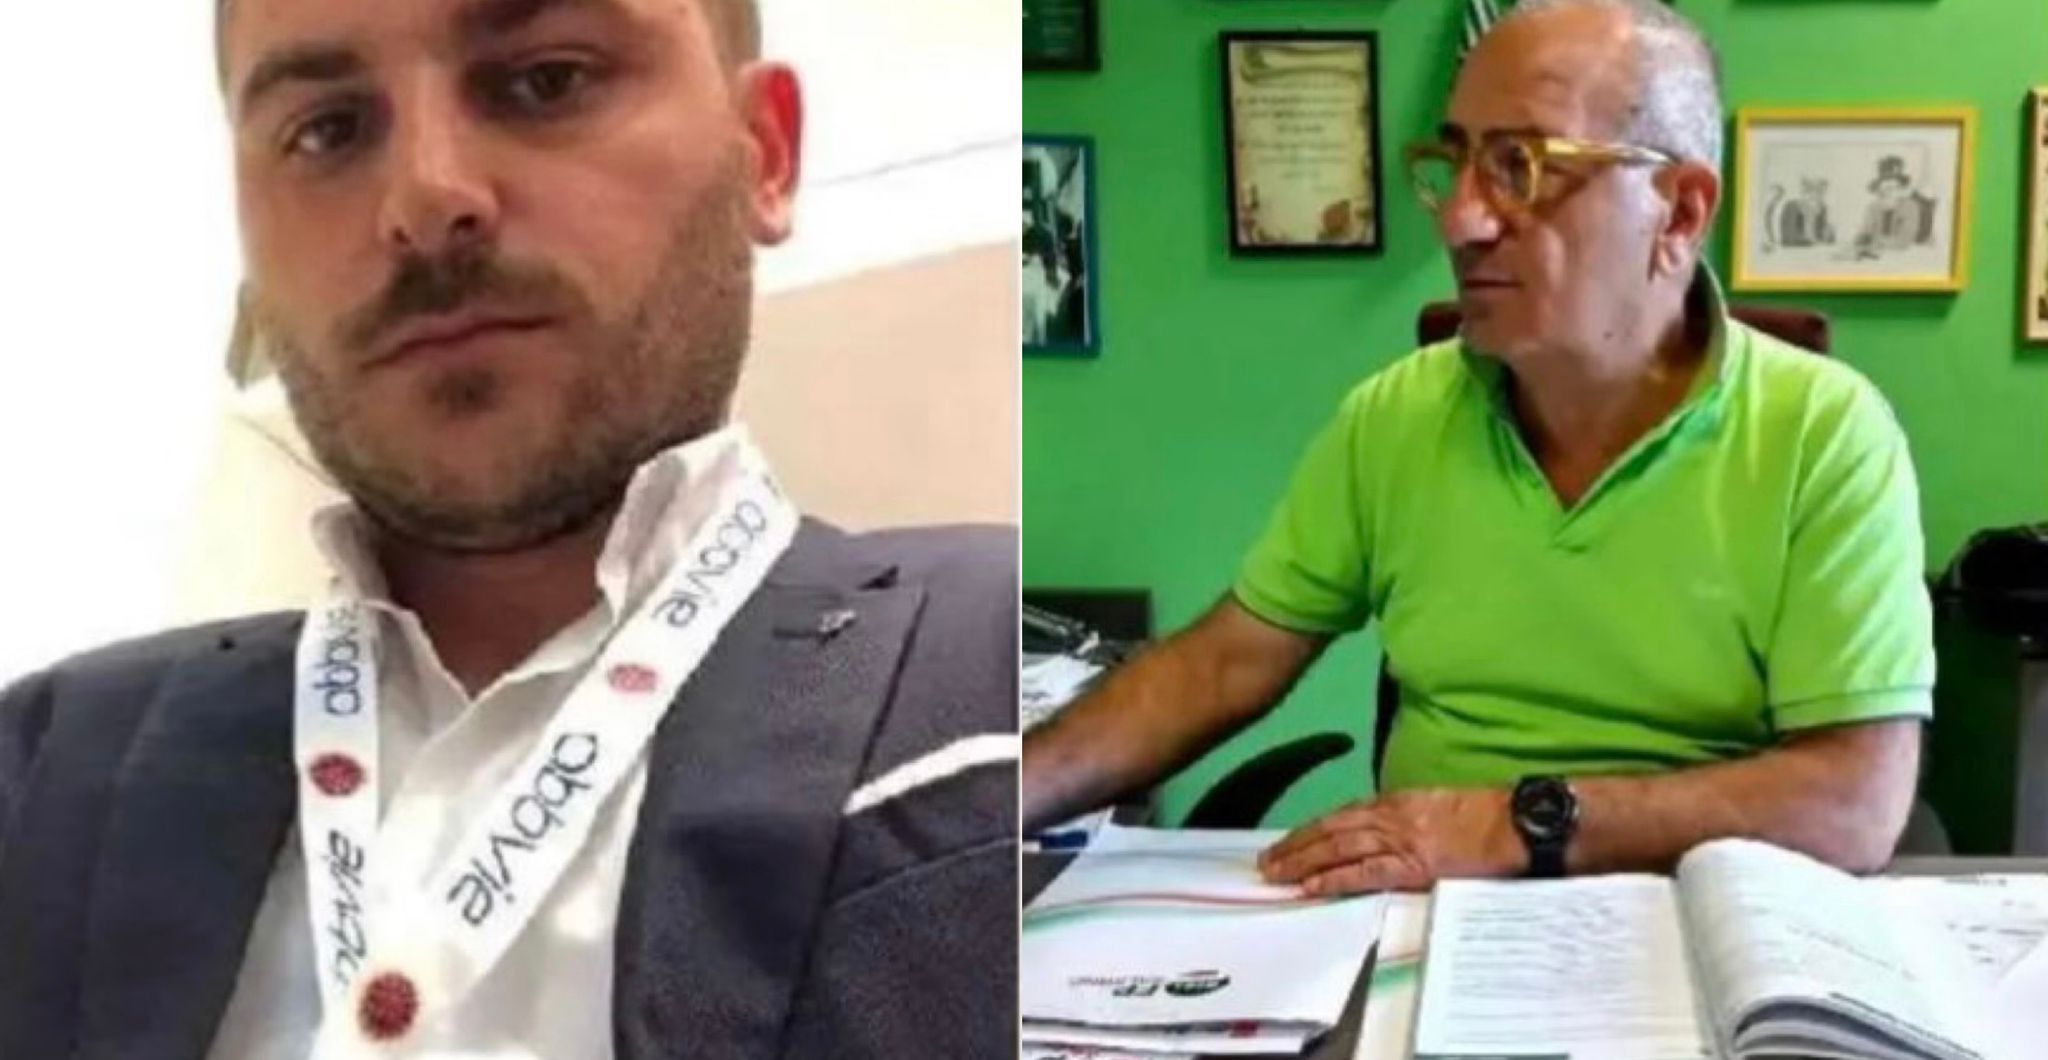 Salerno: Cisl Fp su aggressione operatore sanitario a Penitenziario